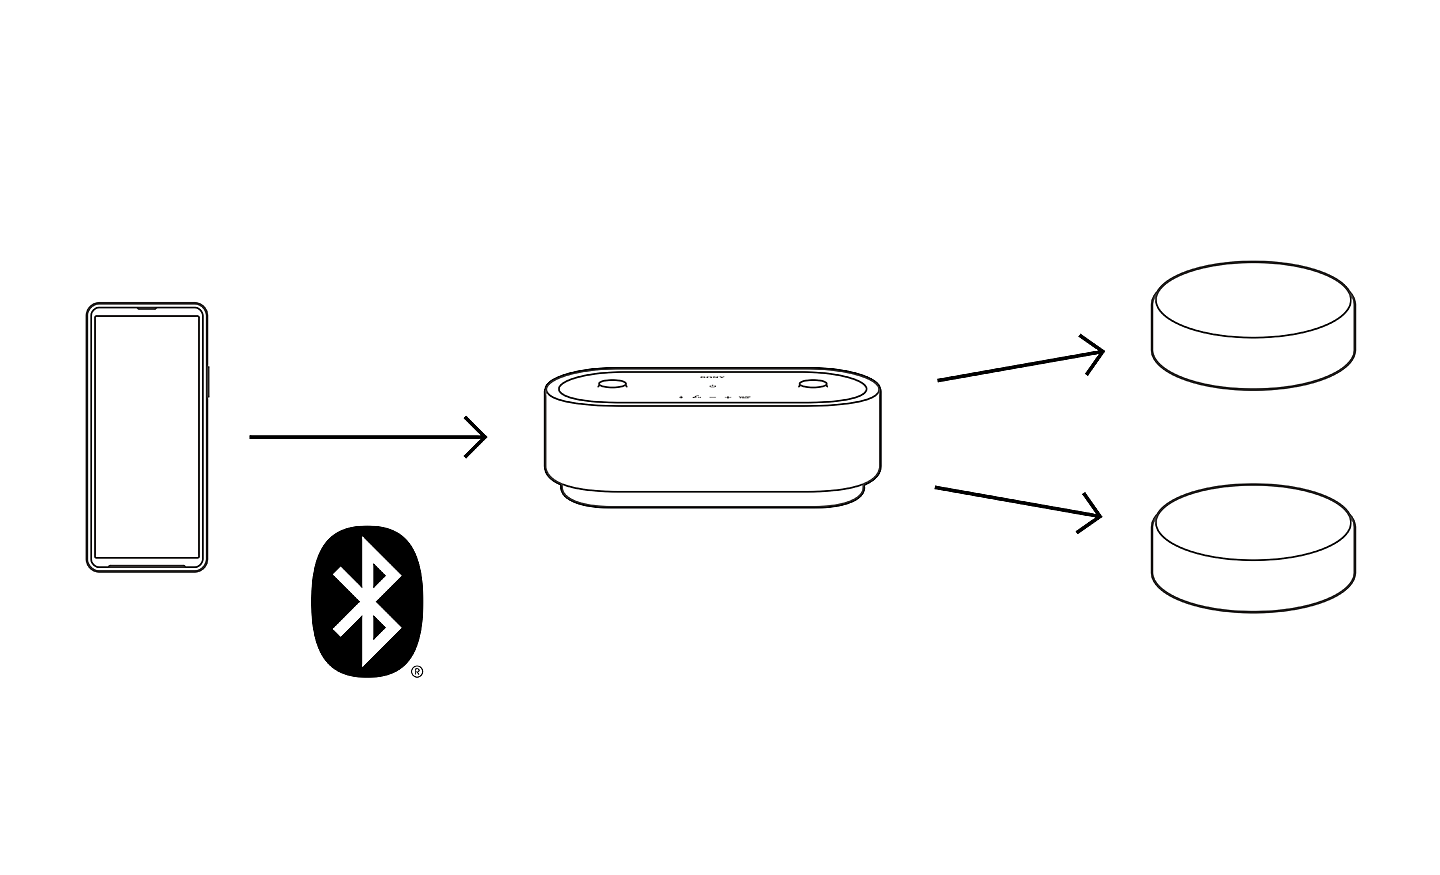 Diagrama com uma seta a apontar de um telemóvel para o sistema HT-AX7 e, em seguida, duas setas adicionais a apontar para as colunas traseiras